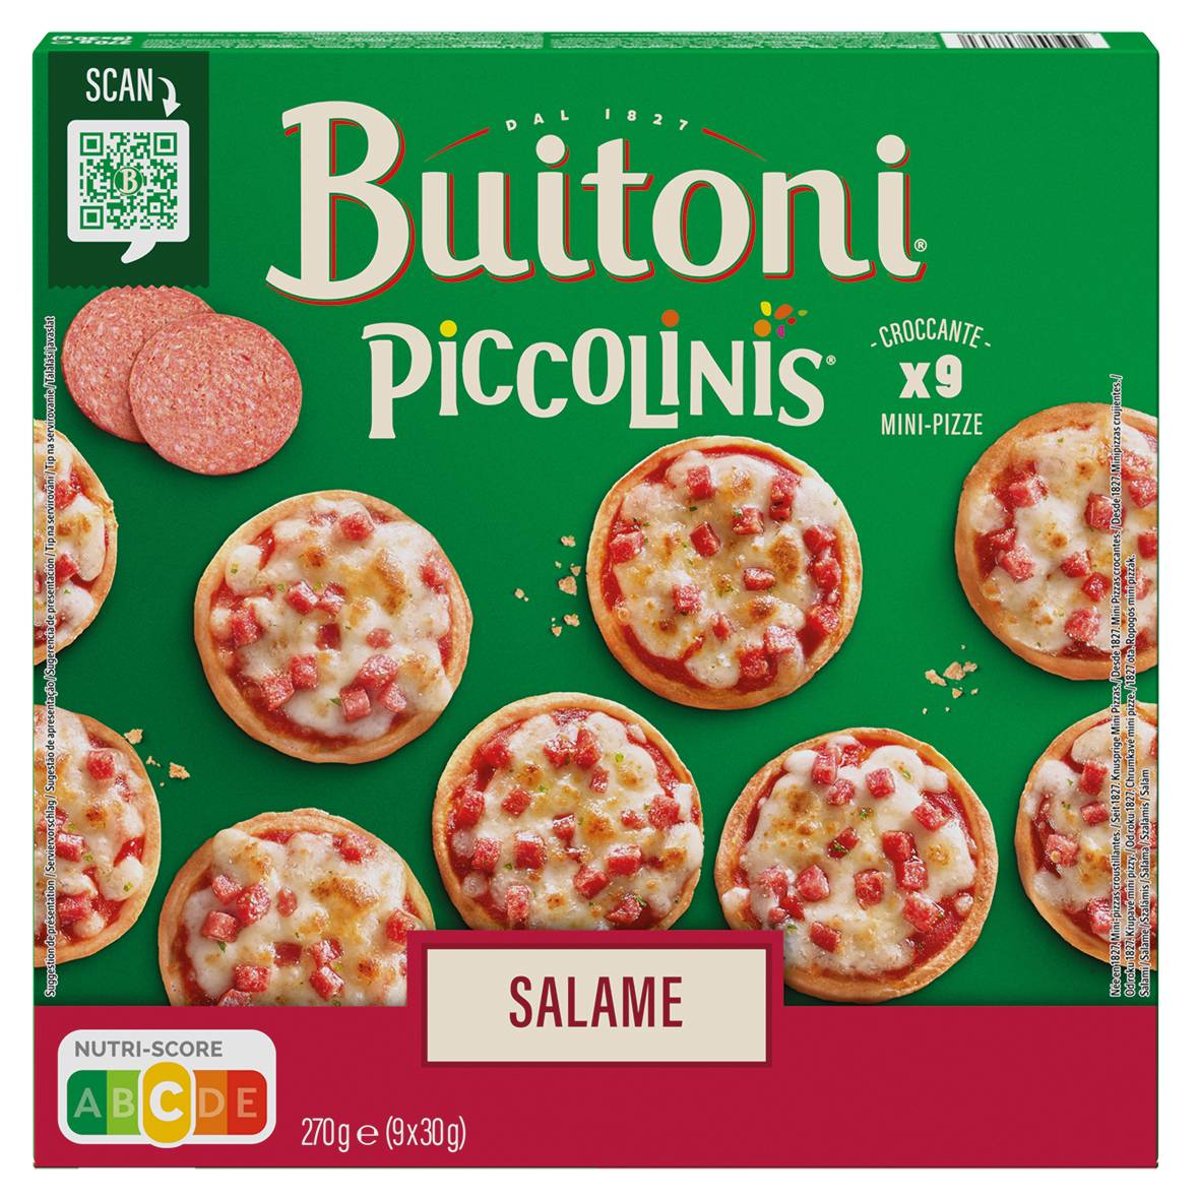 Buitoni Piccolinis Salame pizza 9 ks